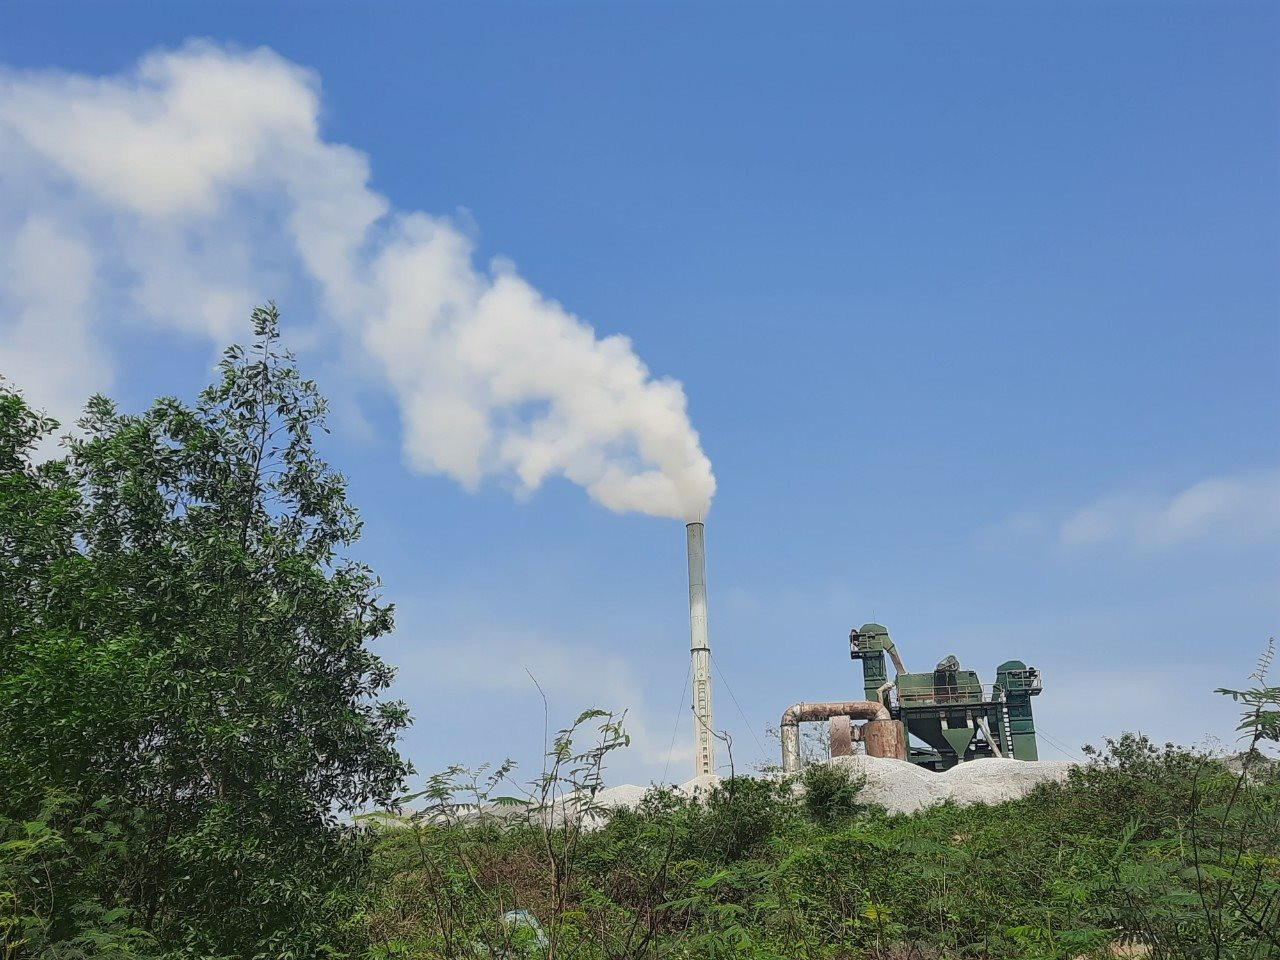 Quảng Bình: Xử lý triệt để các điểm nóng về ô nhiễm bụi, khí thải